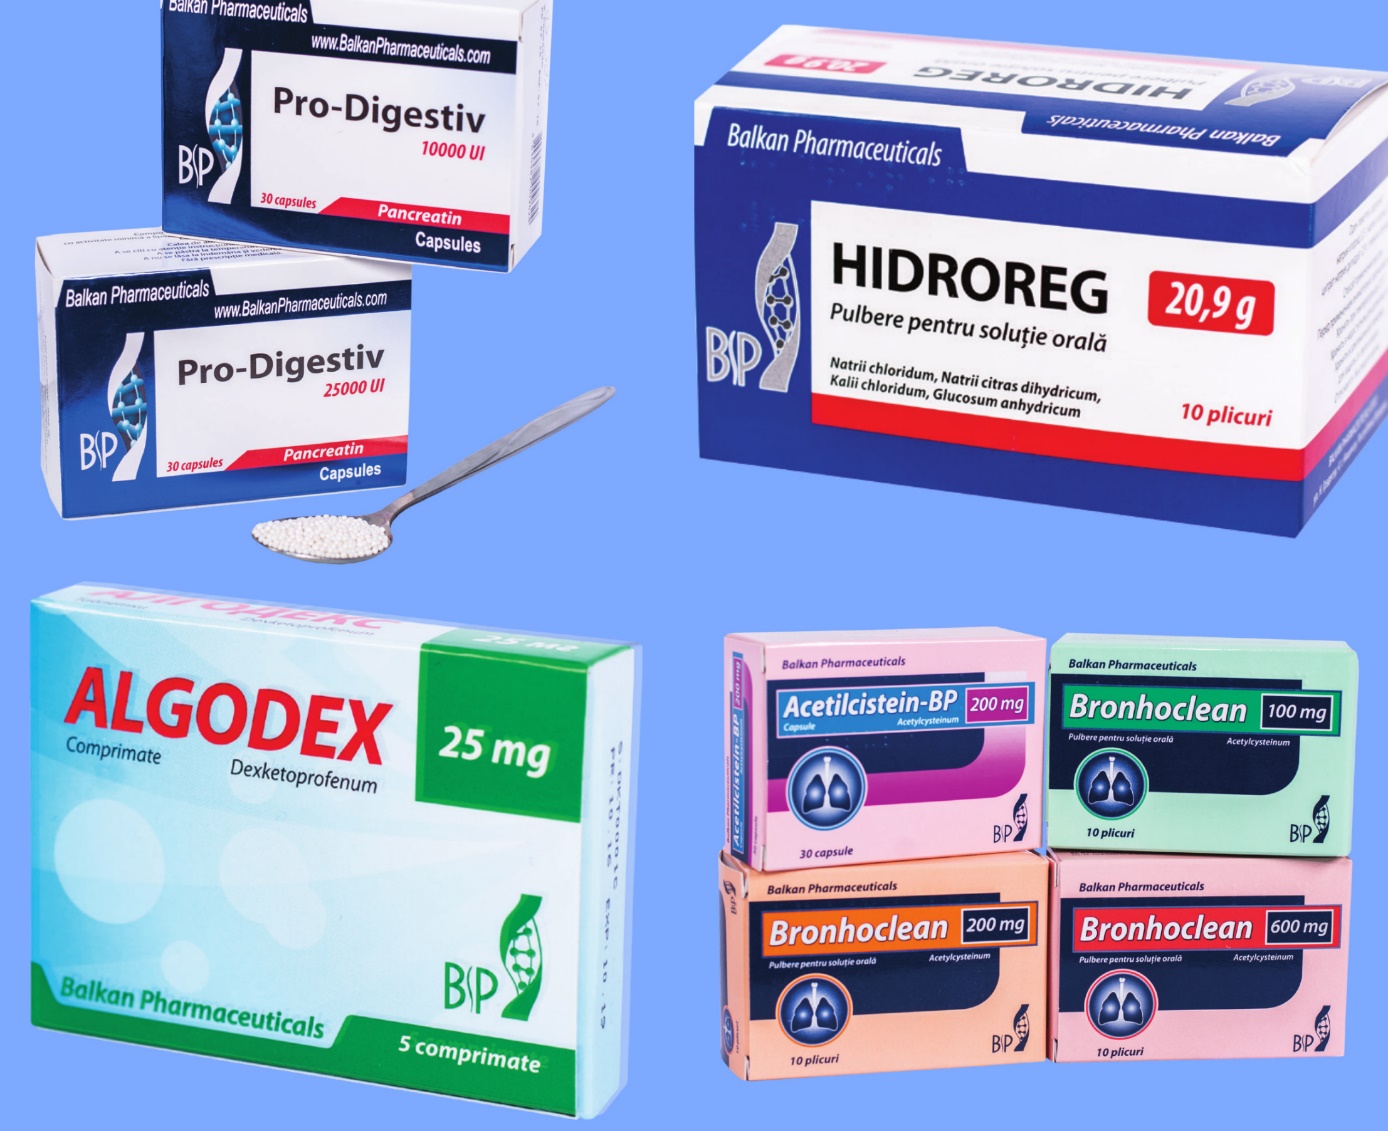 o imagine cu mai multe produse comercializate de Balkan Pharmaceuticals